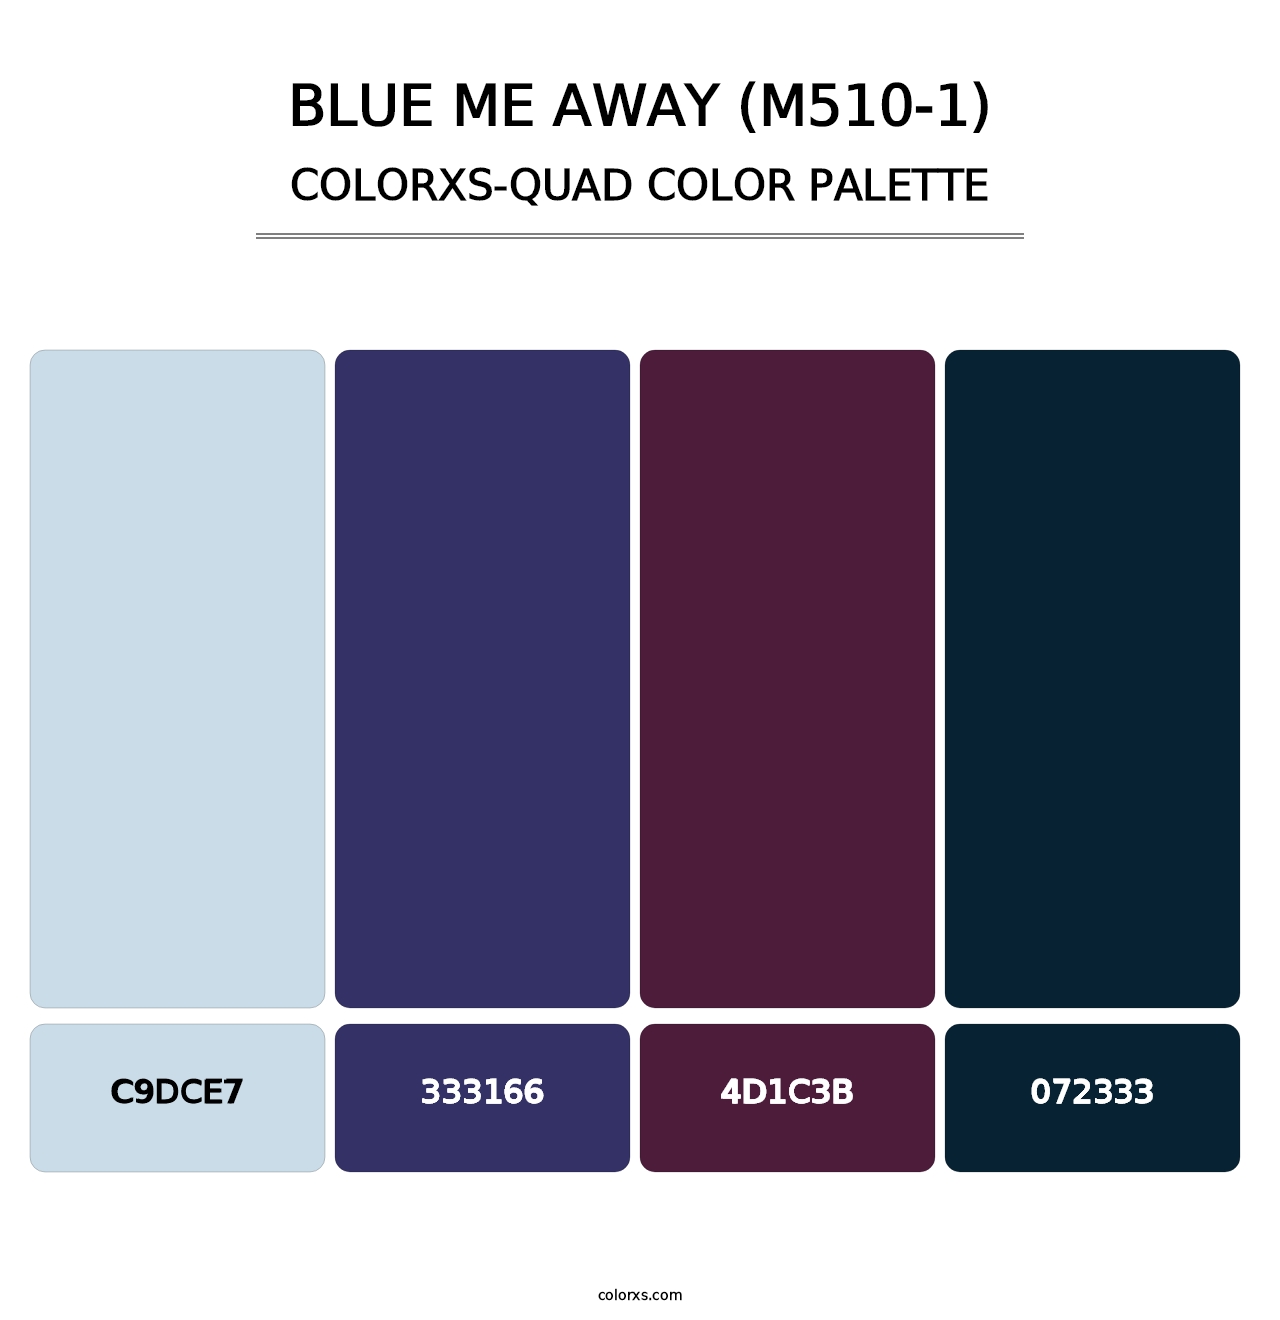 Blue Me Away (M510-1) - Colorxs Quad Palette